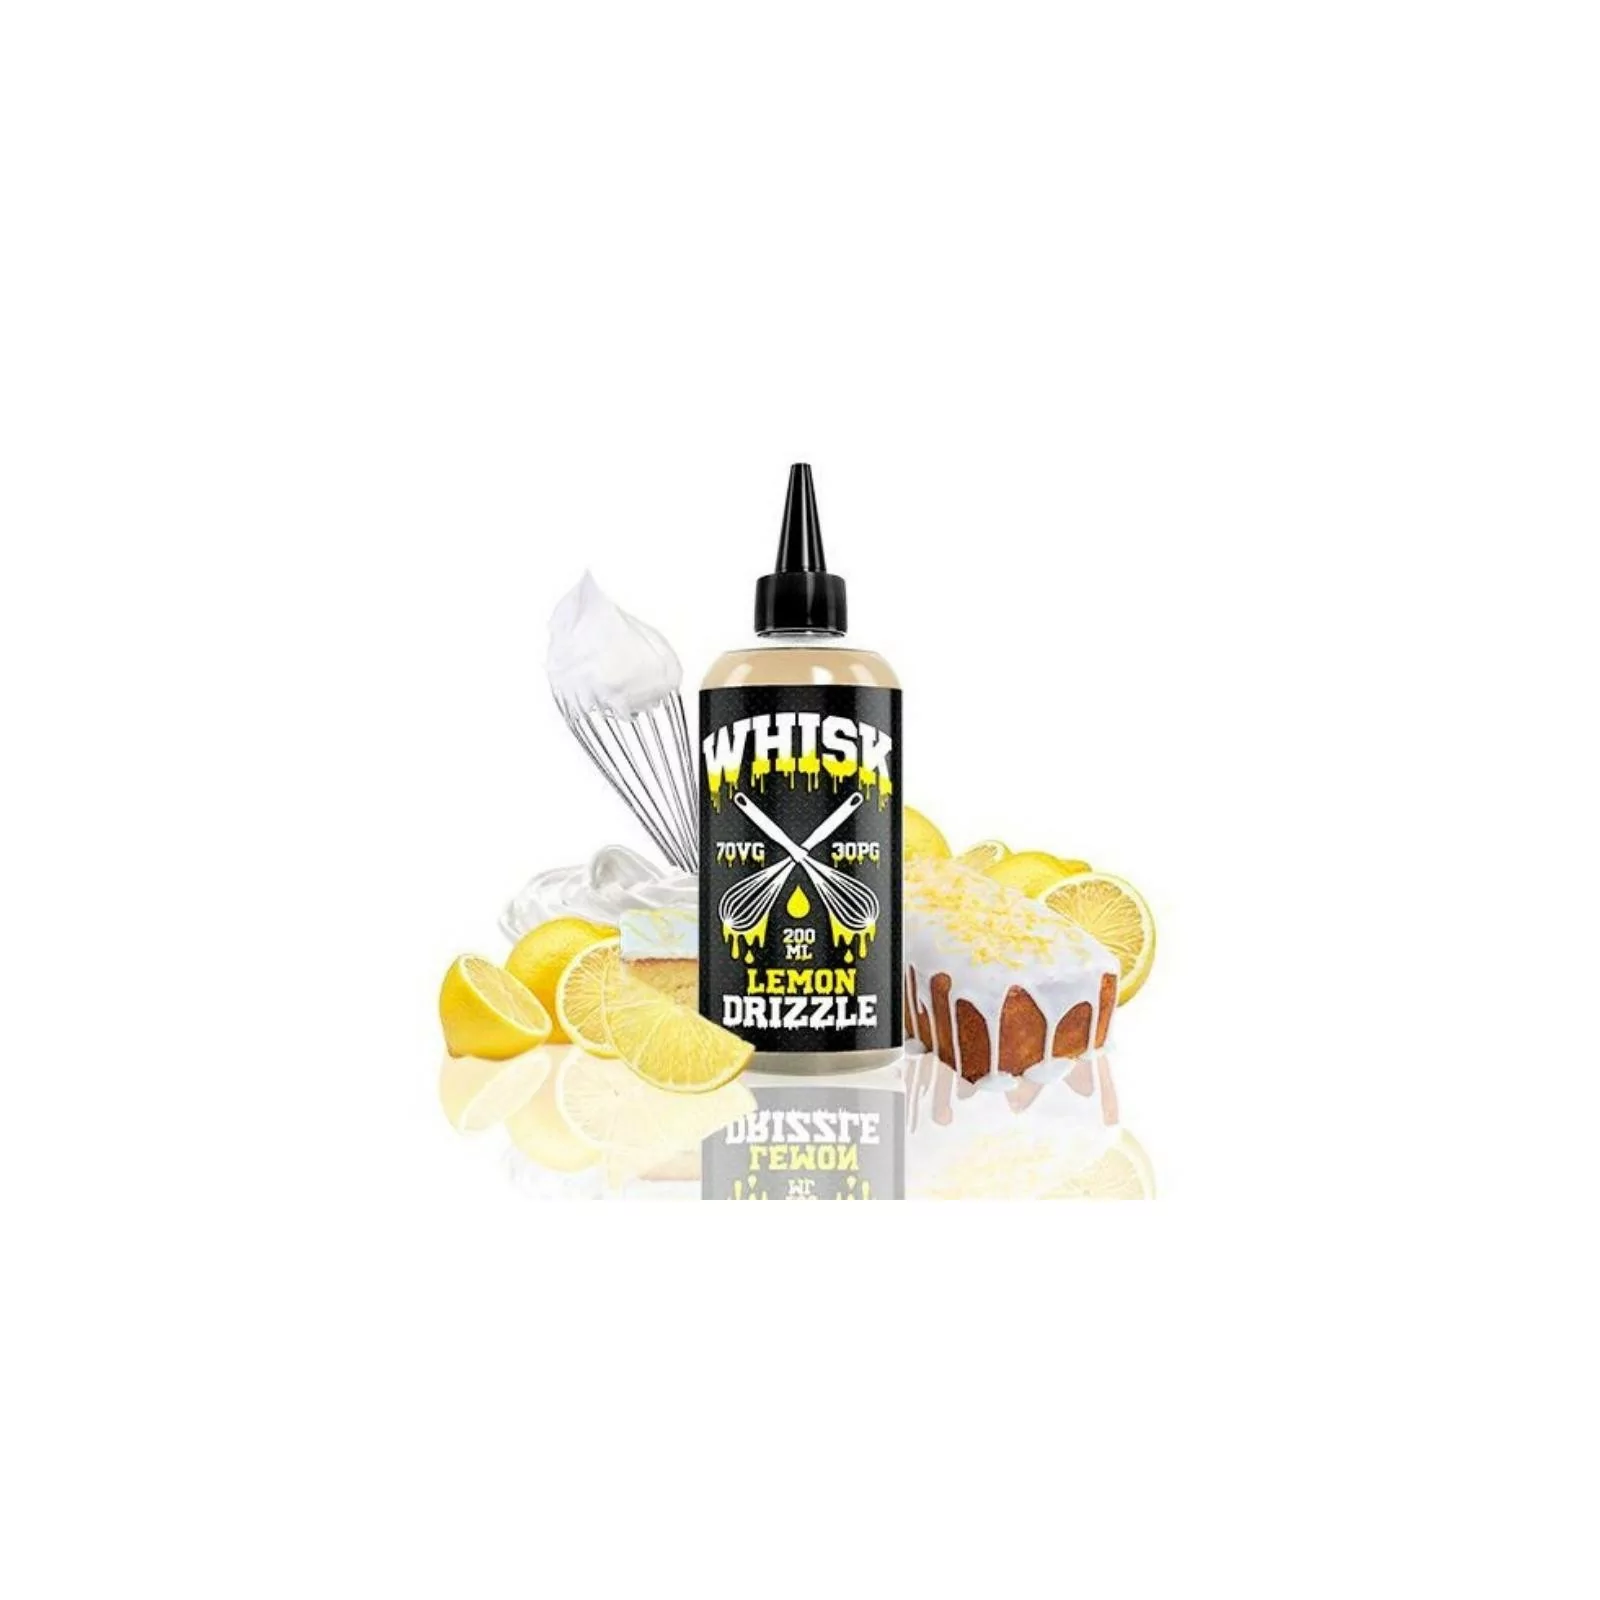 Lemon Drizzle 200 ml - Whisk